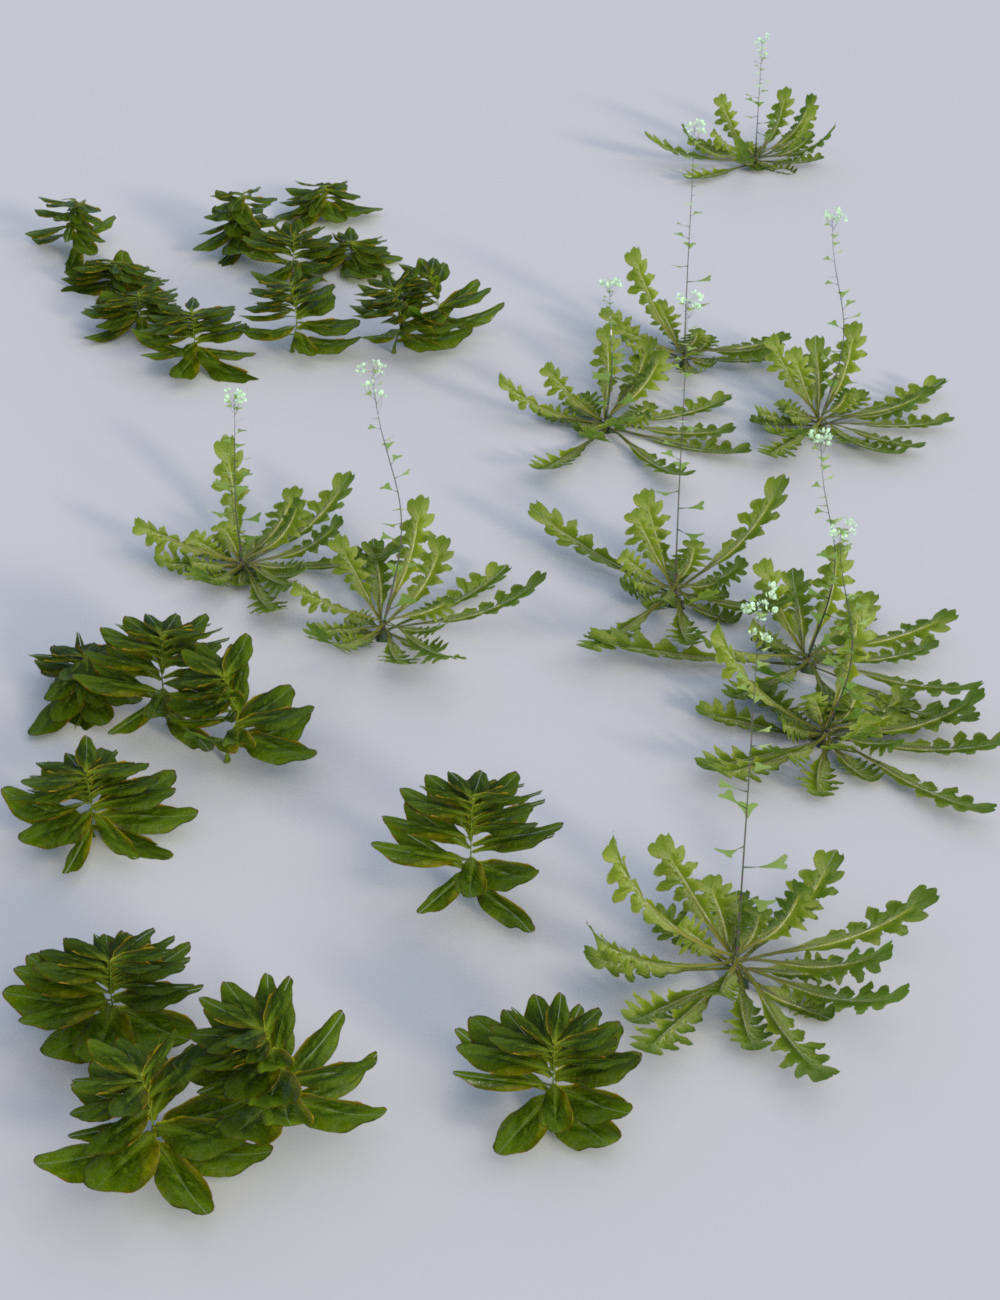 Teeny Tiny Plants by: MartinJFrost, 3D Models by Daz 3D